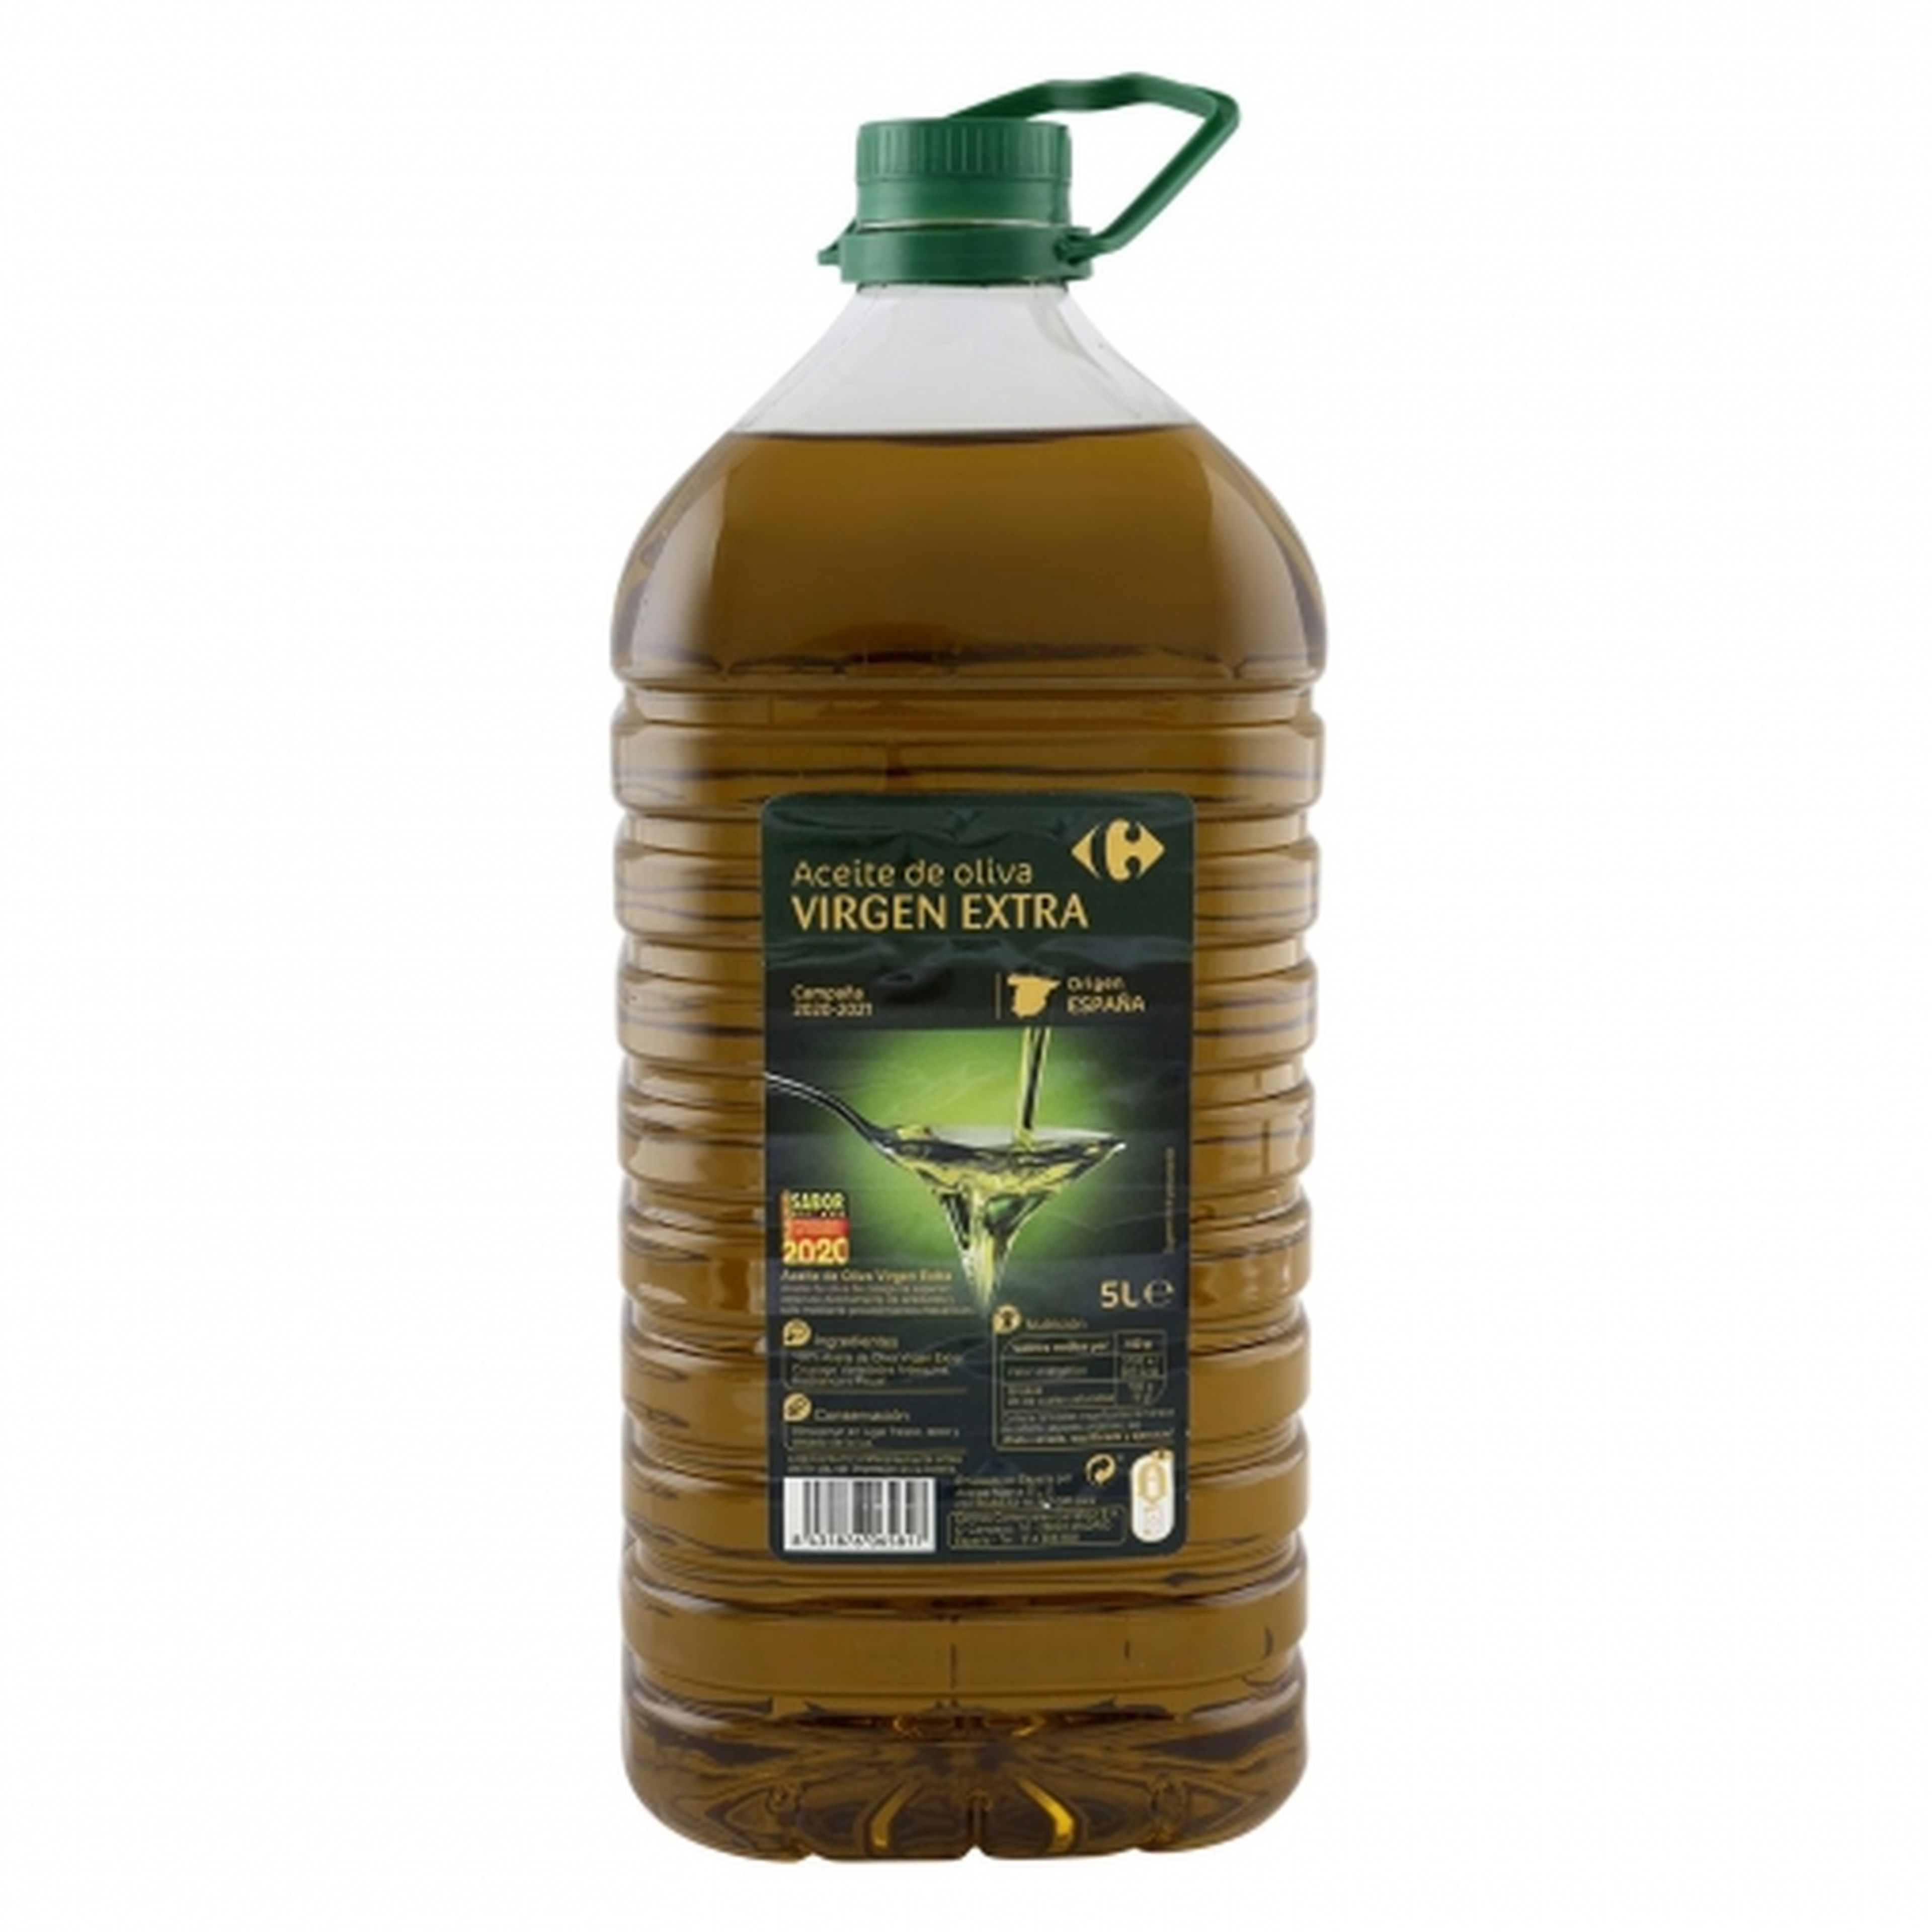 Aceite de oliva virgen extra de Carrefour